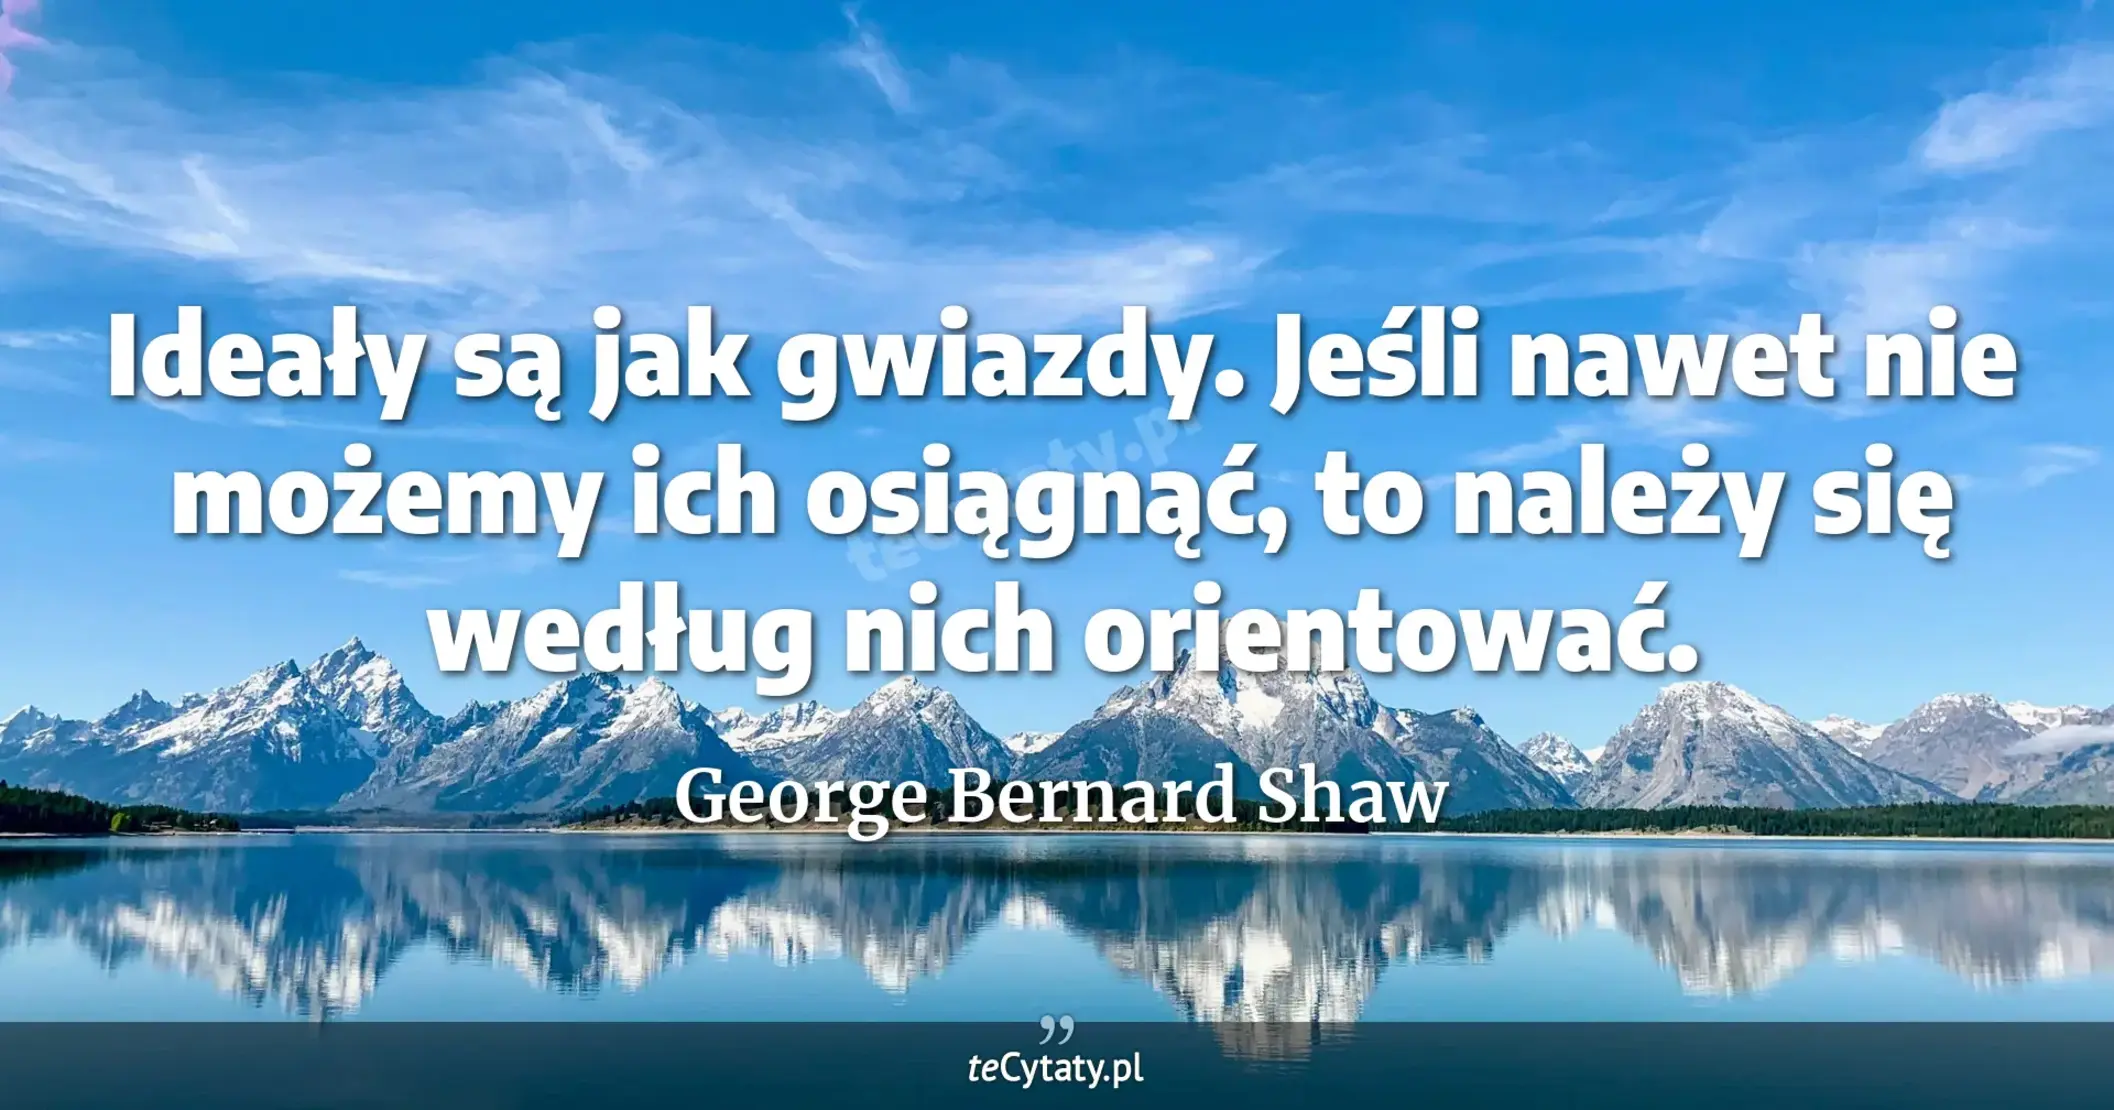 Ideały są jak gwiazdy. Jeśli nawet nie możemy ich osiągnąć, to należy się według nich orientować. - George Bernard Shaw